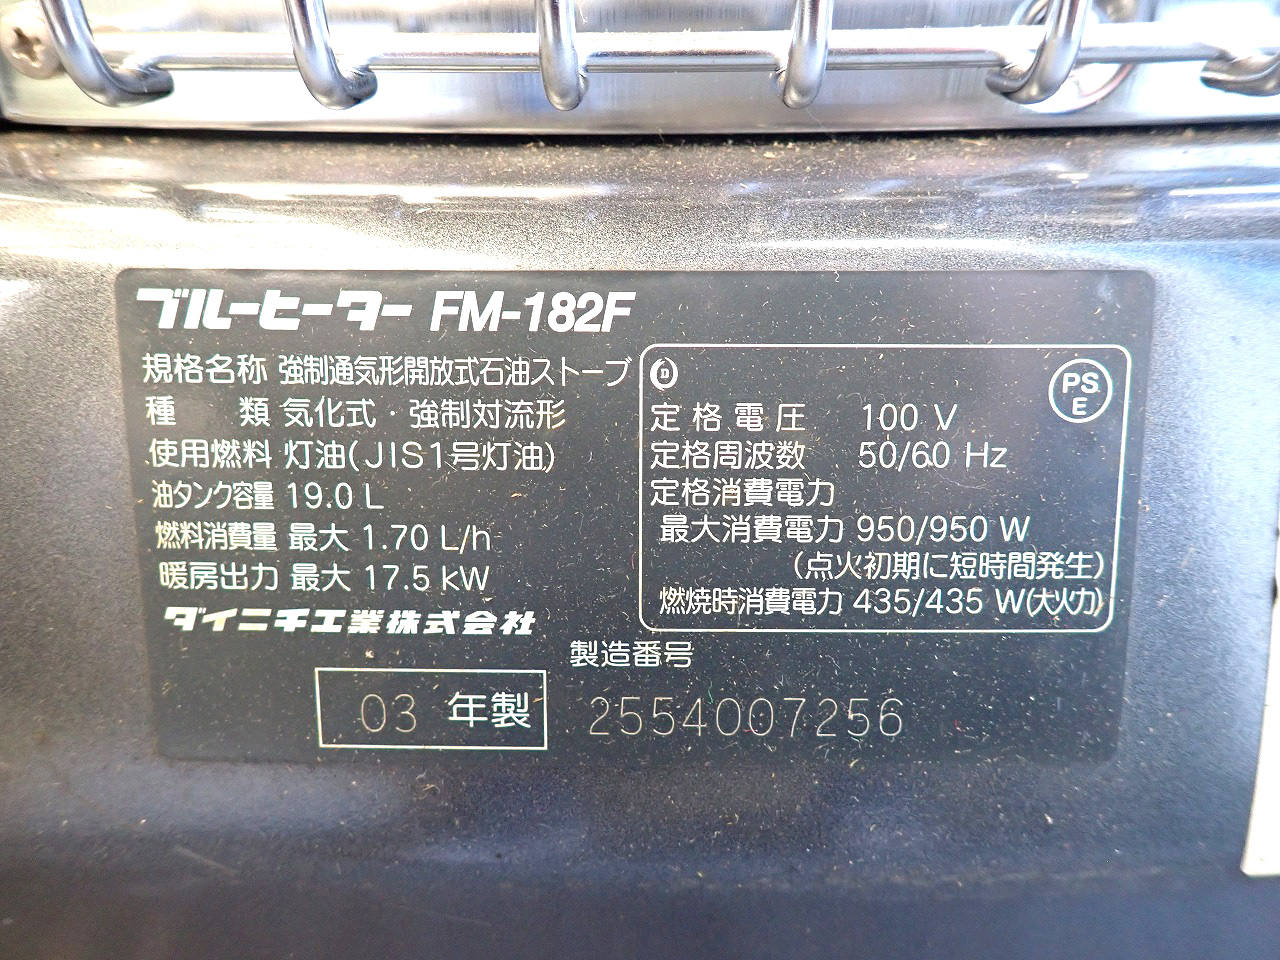 FM-182F